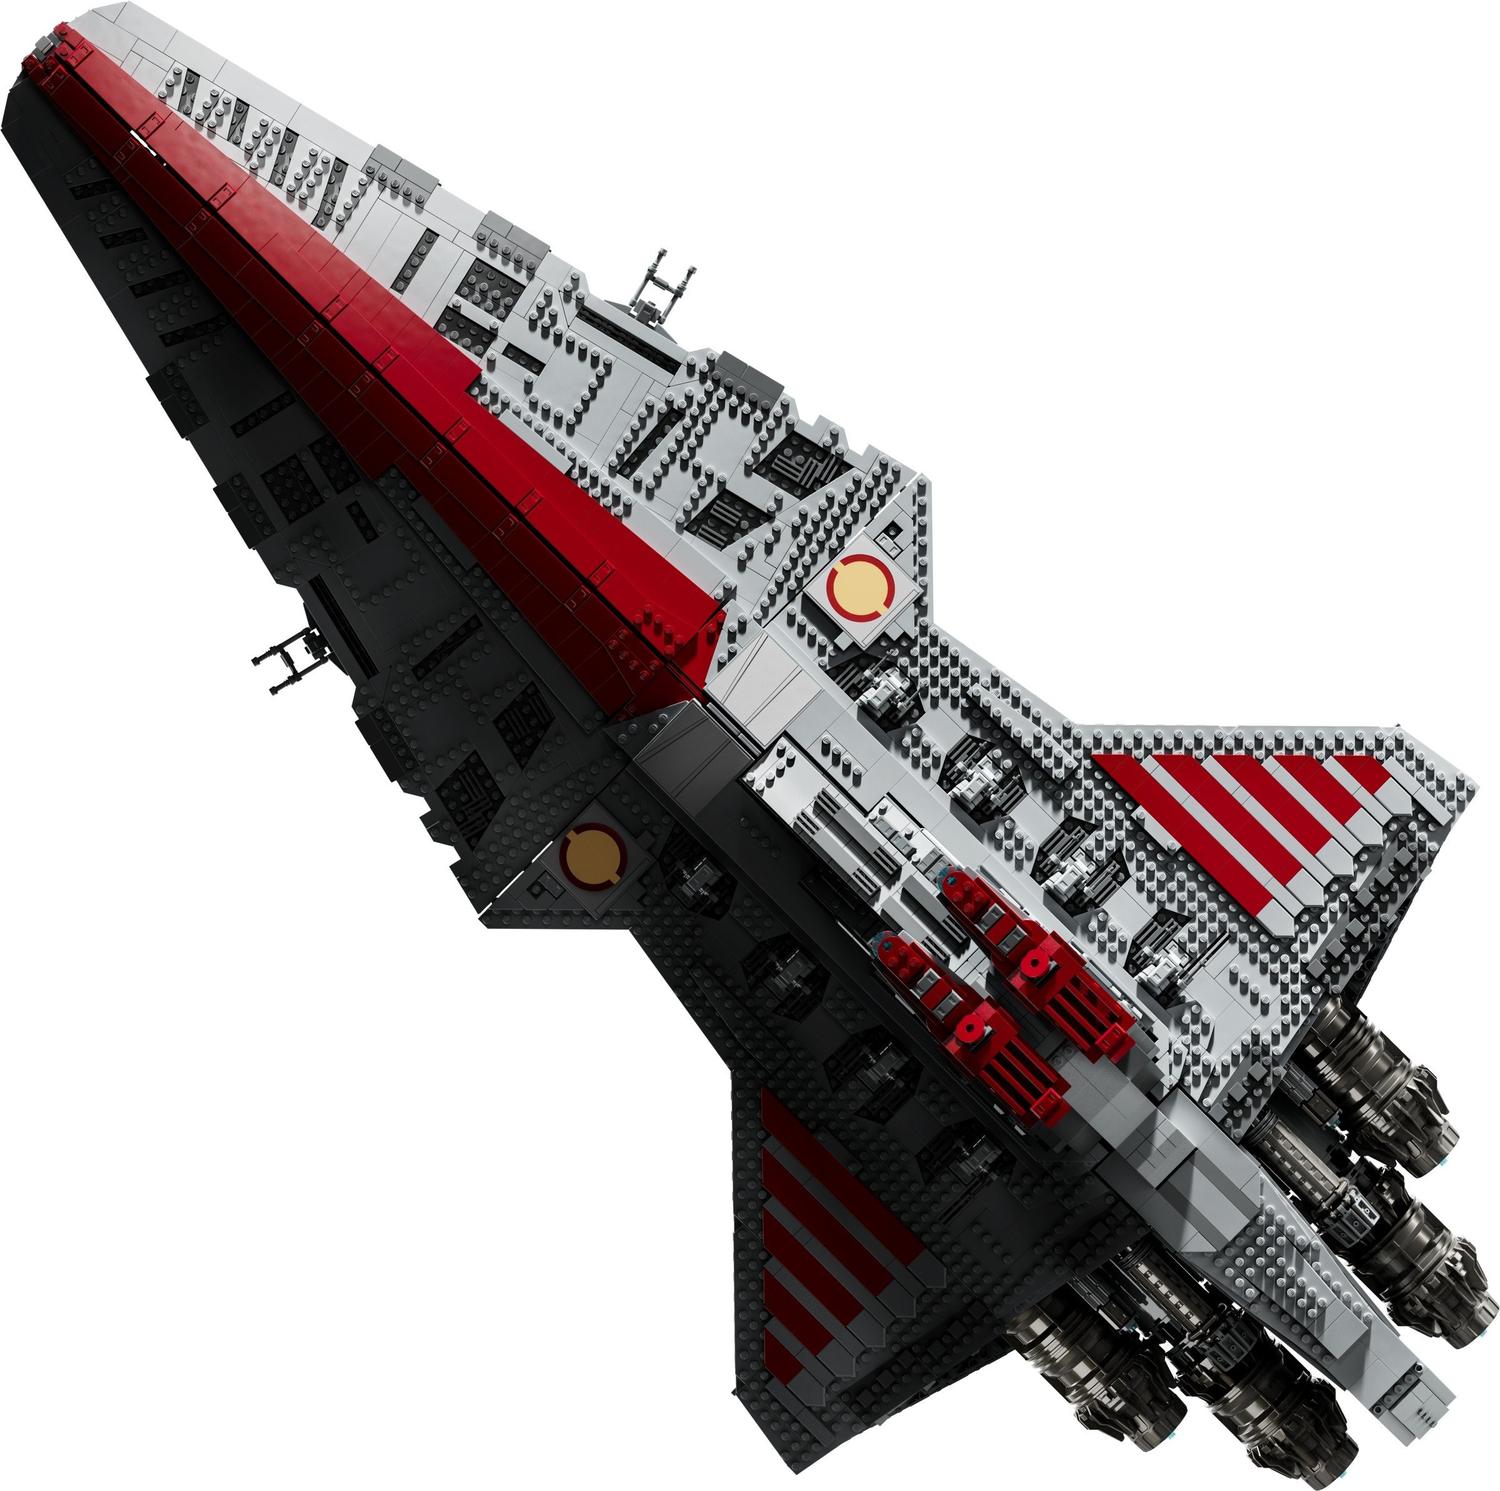 Le croiseur d'assaut de classe Venator de la République 75367, Star Wars™